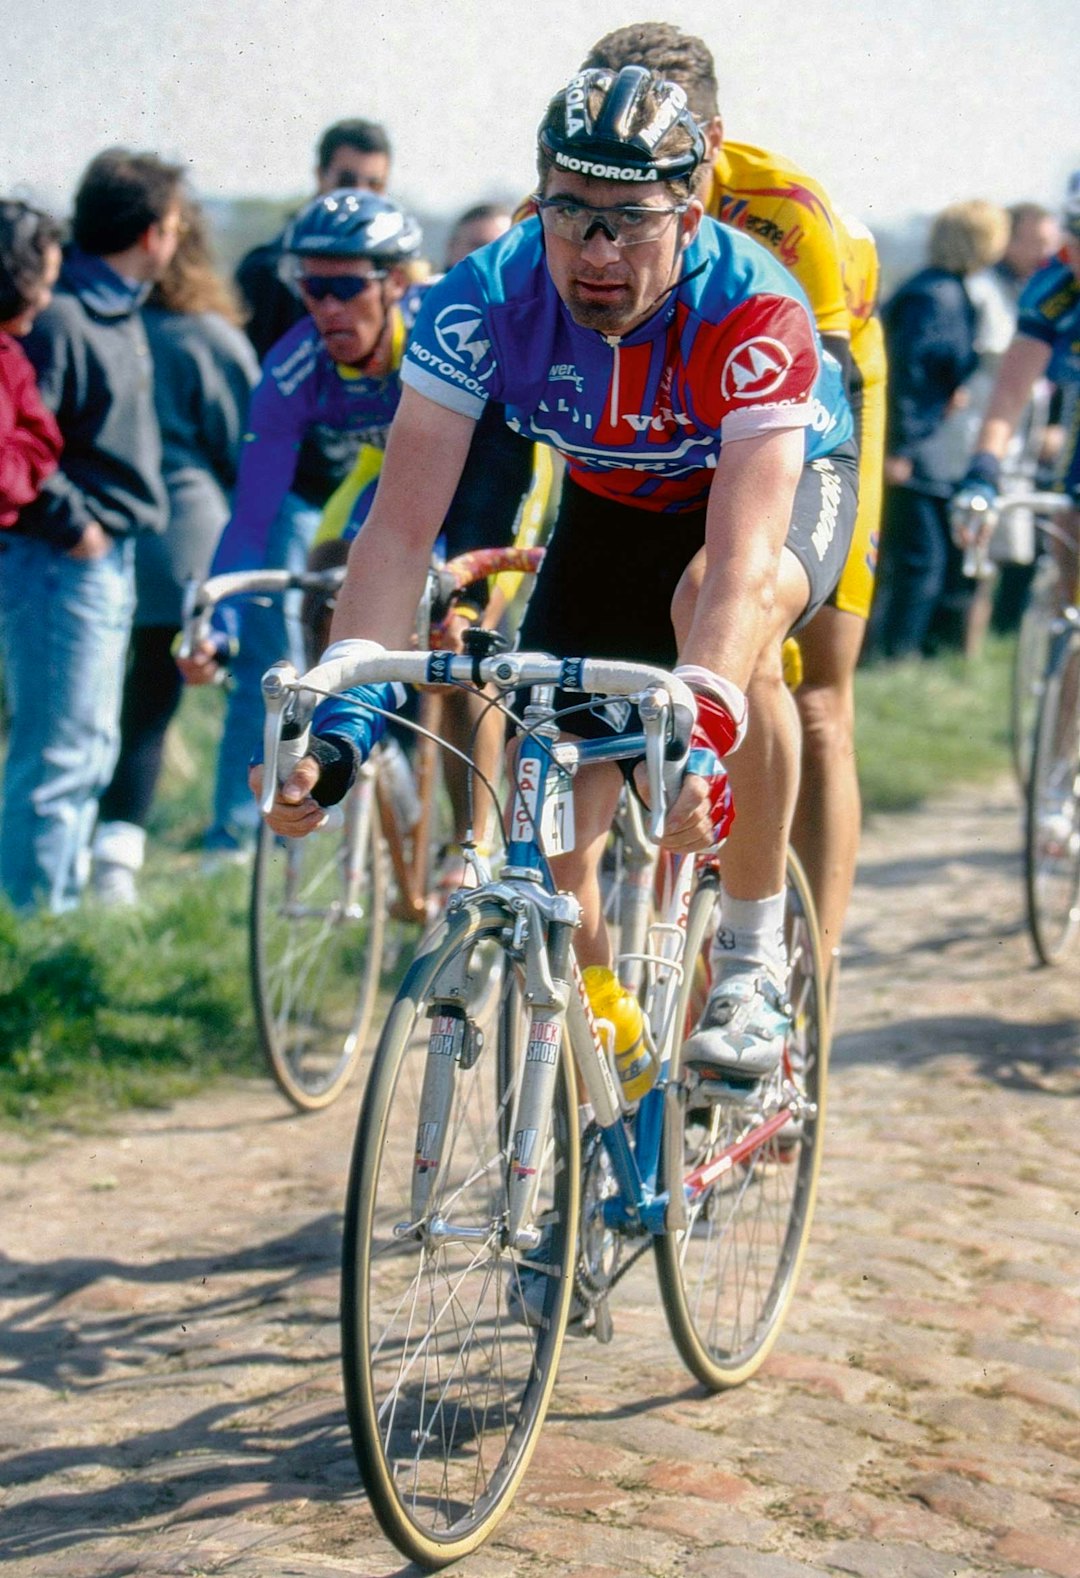 OUTSIDER: Bjørn Stenersen var sjanseløs mot konkurrentene i ritt, tross talentet. Stenersen ville ikke ta doping selv. Her fra 95-utgaven av Paris-Roubaix med dempegaffel.  Foto: Cor Vos.